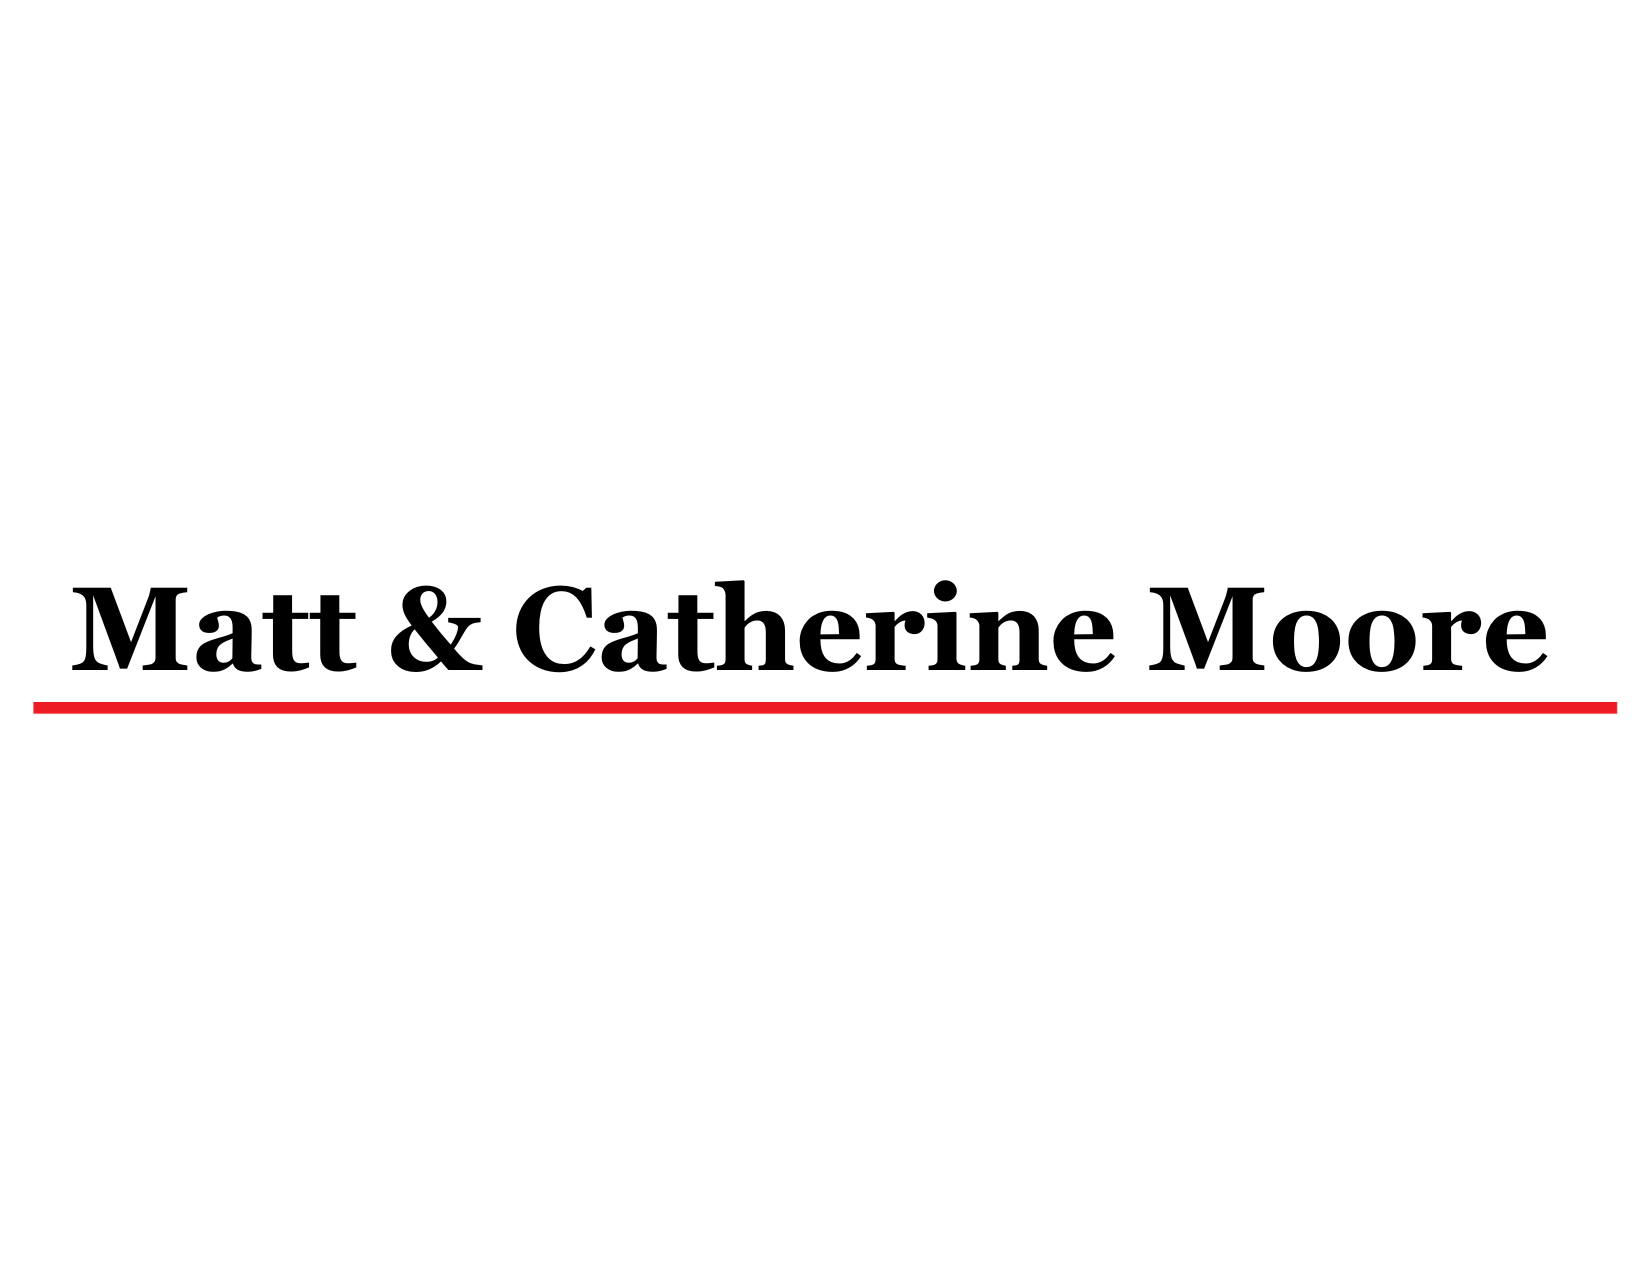 Matt & Catherine Moore